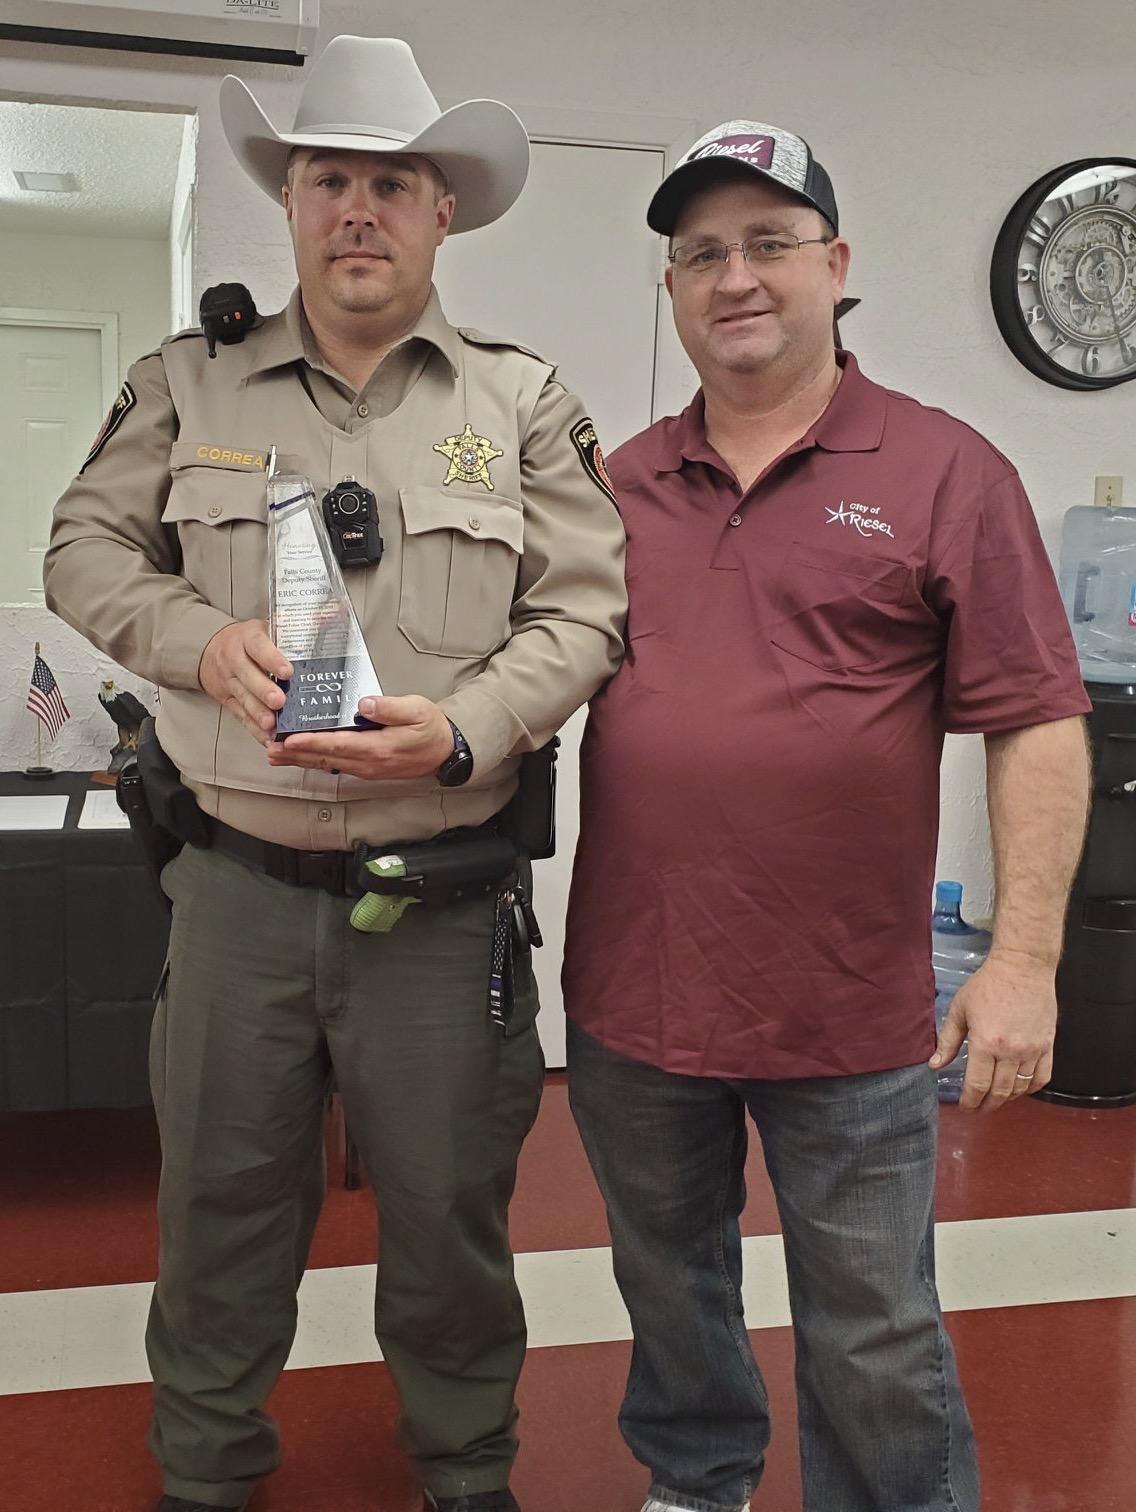 Deputy Eric Correa accepted an award from Reisel Mayor Kevin Hogg.